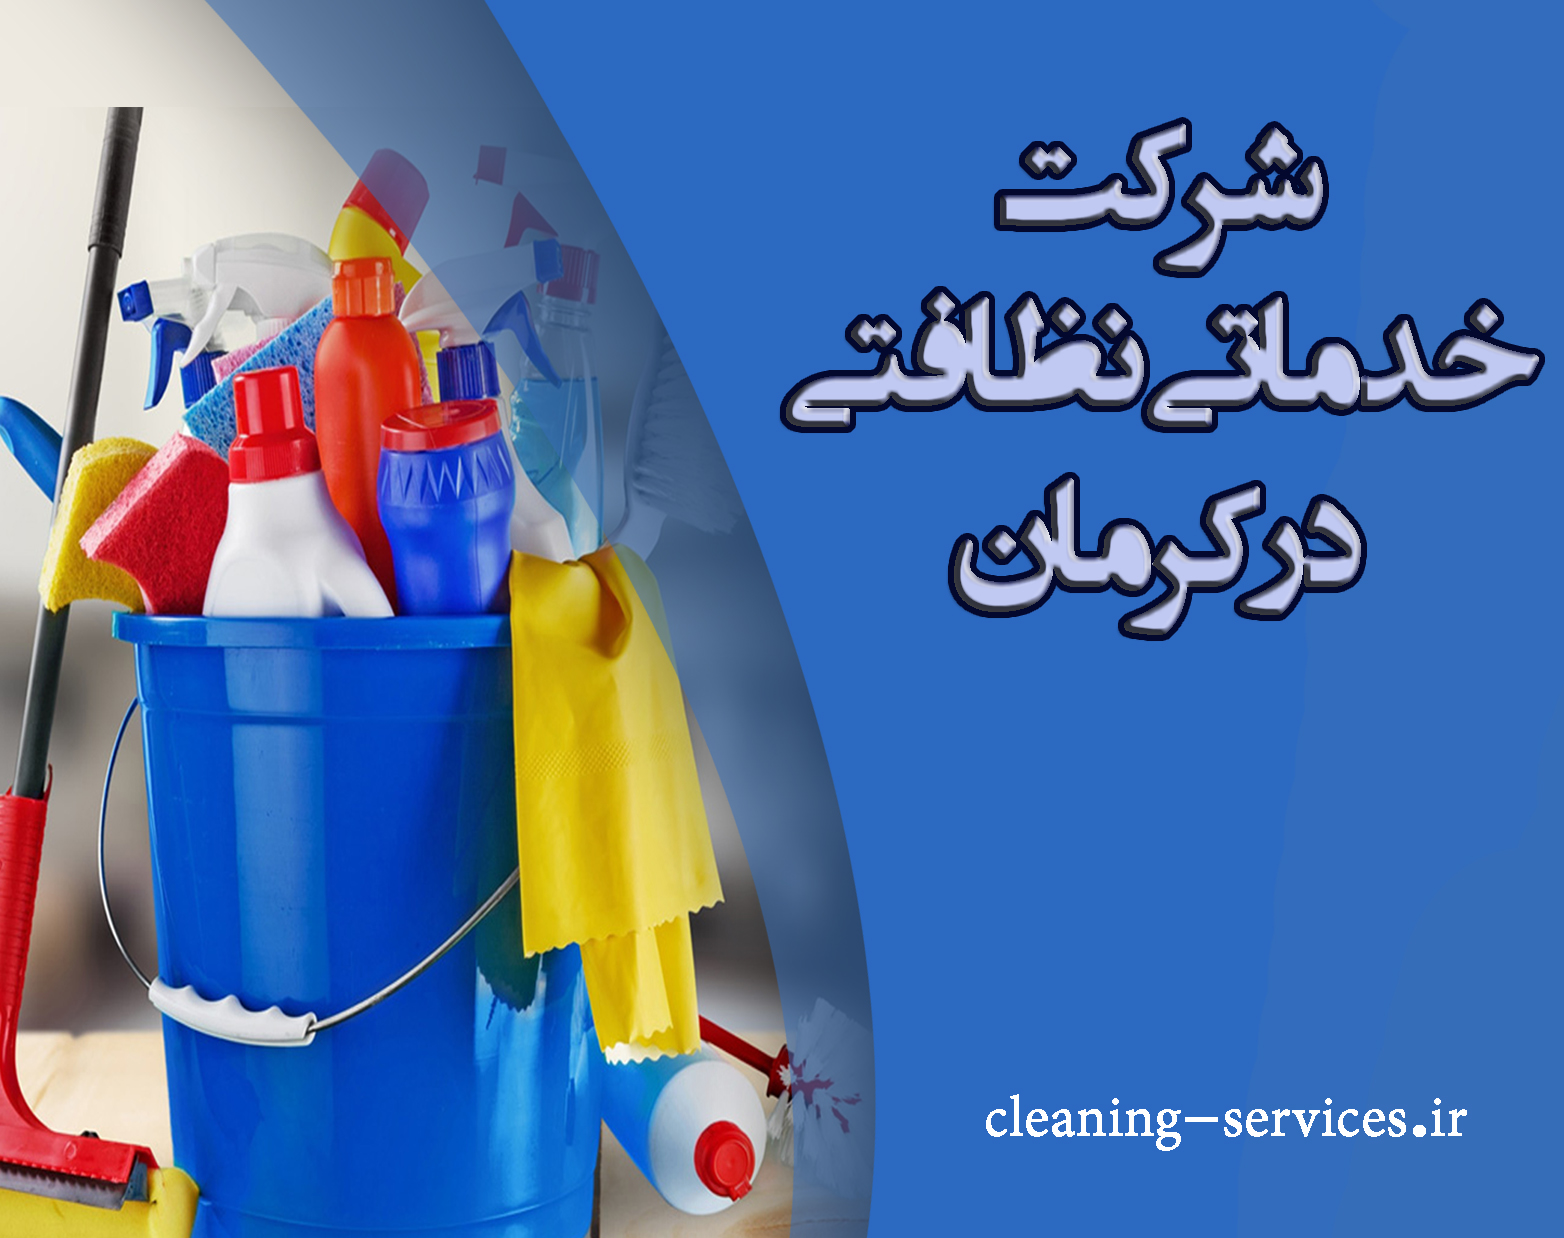 شرکت خدماتی نظافتی در کرمان